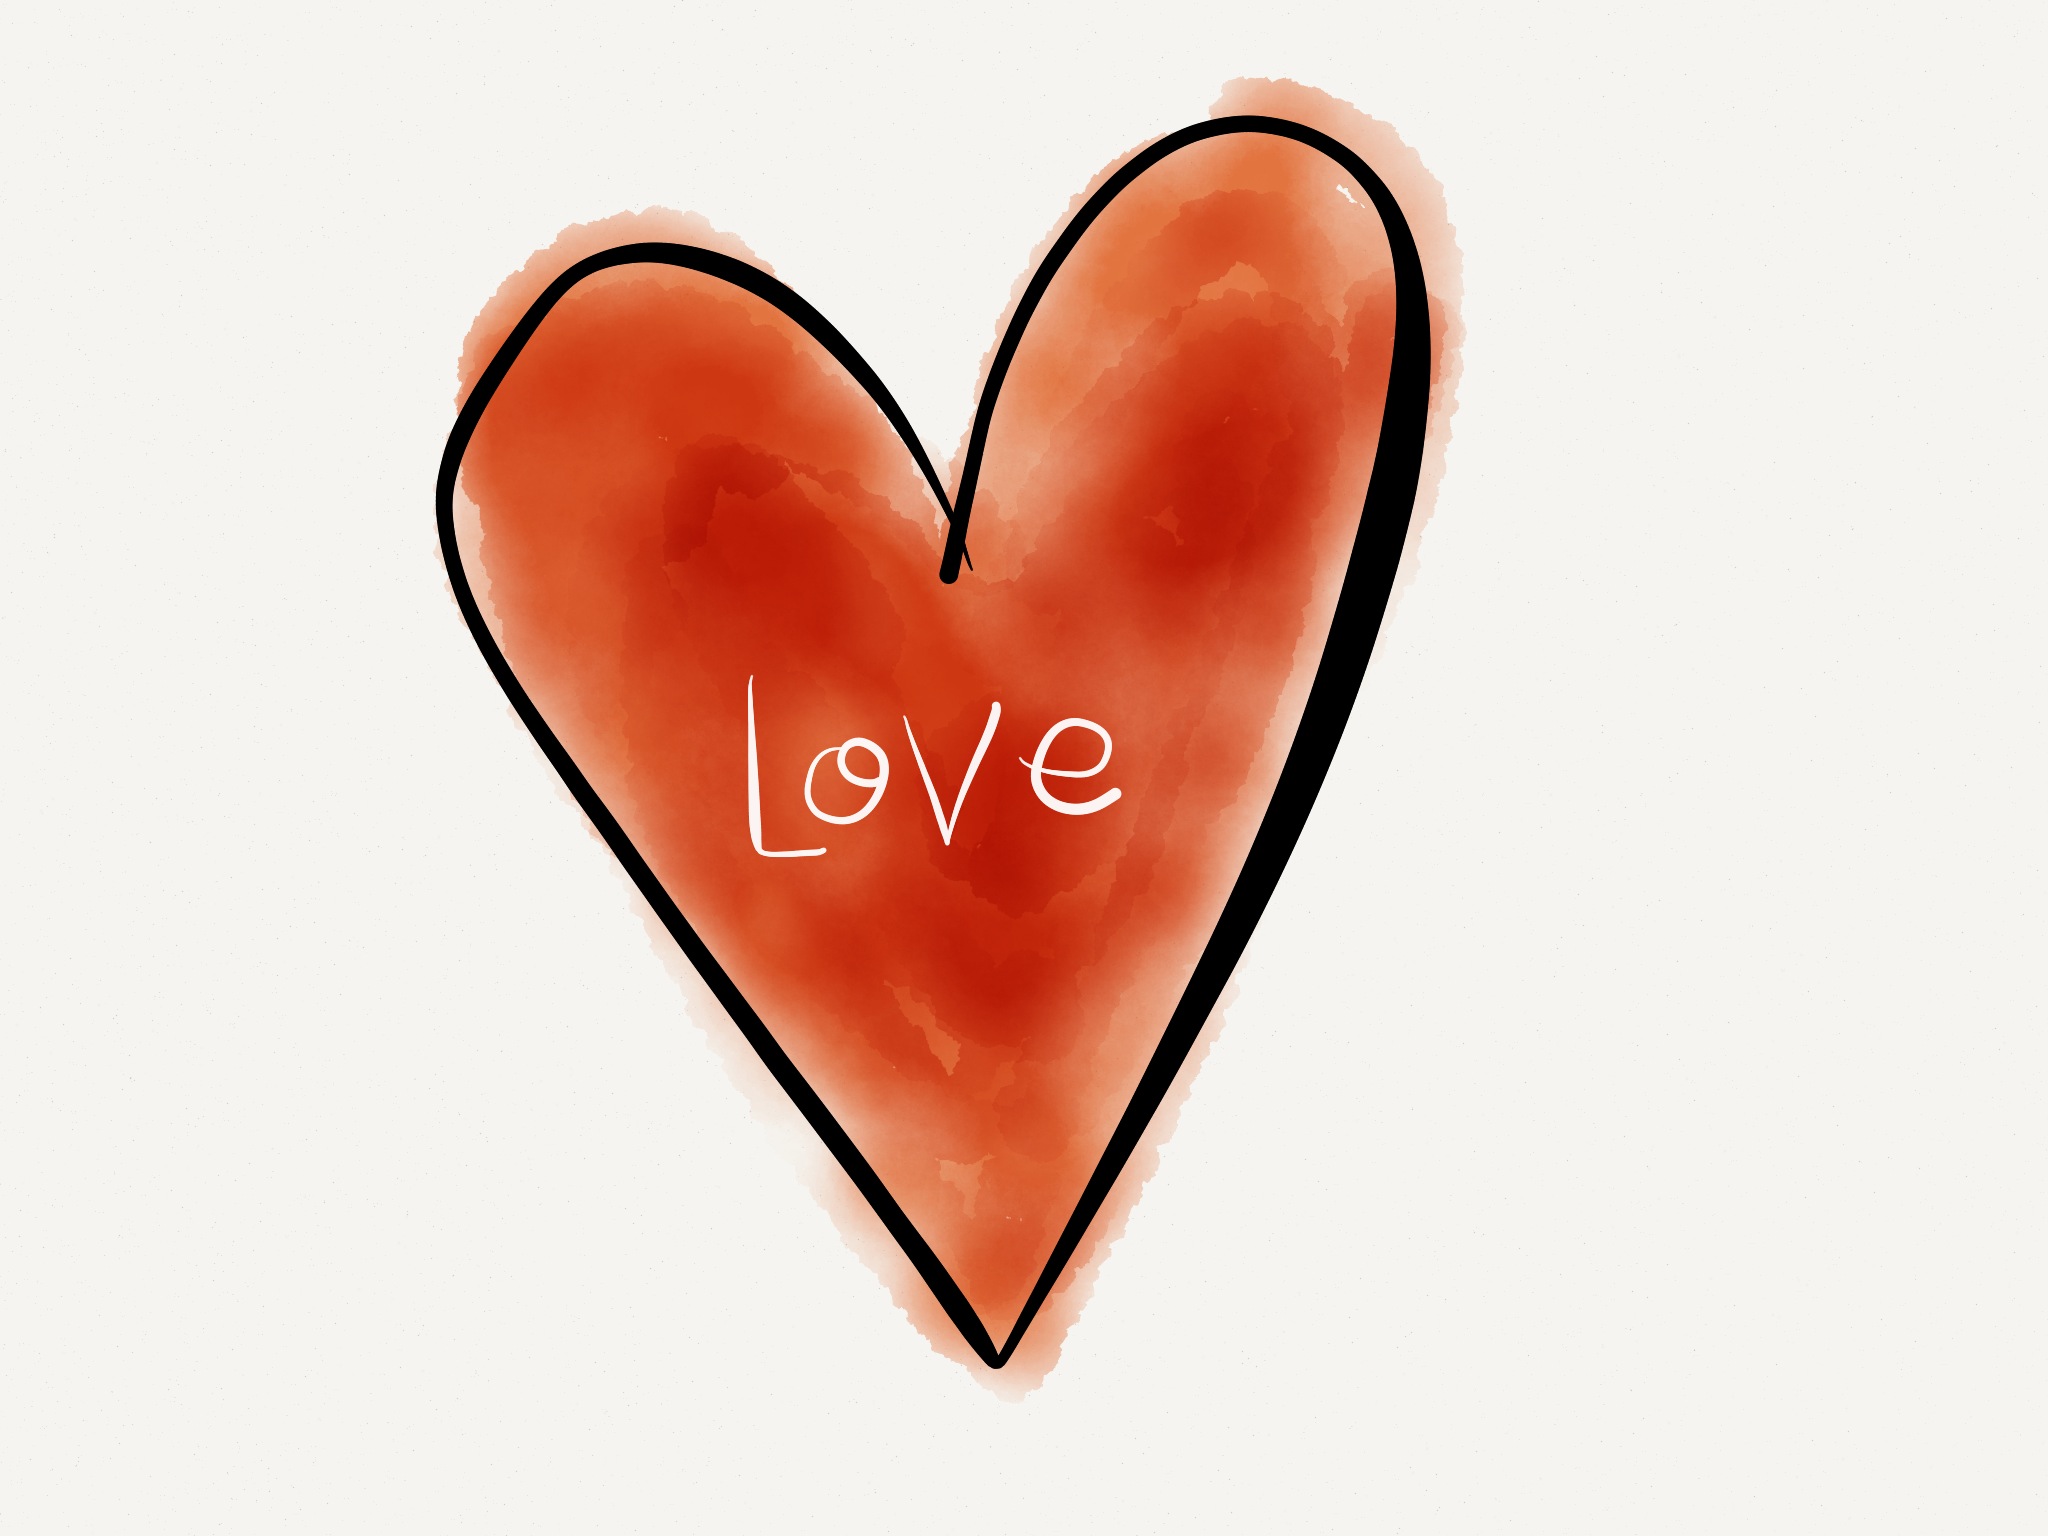 Love heart - Razblint2048 x 1536